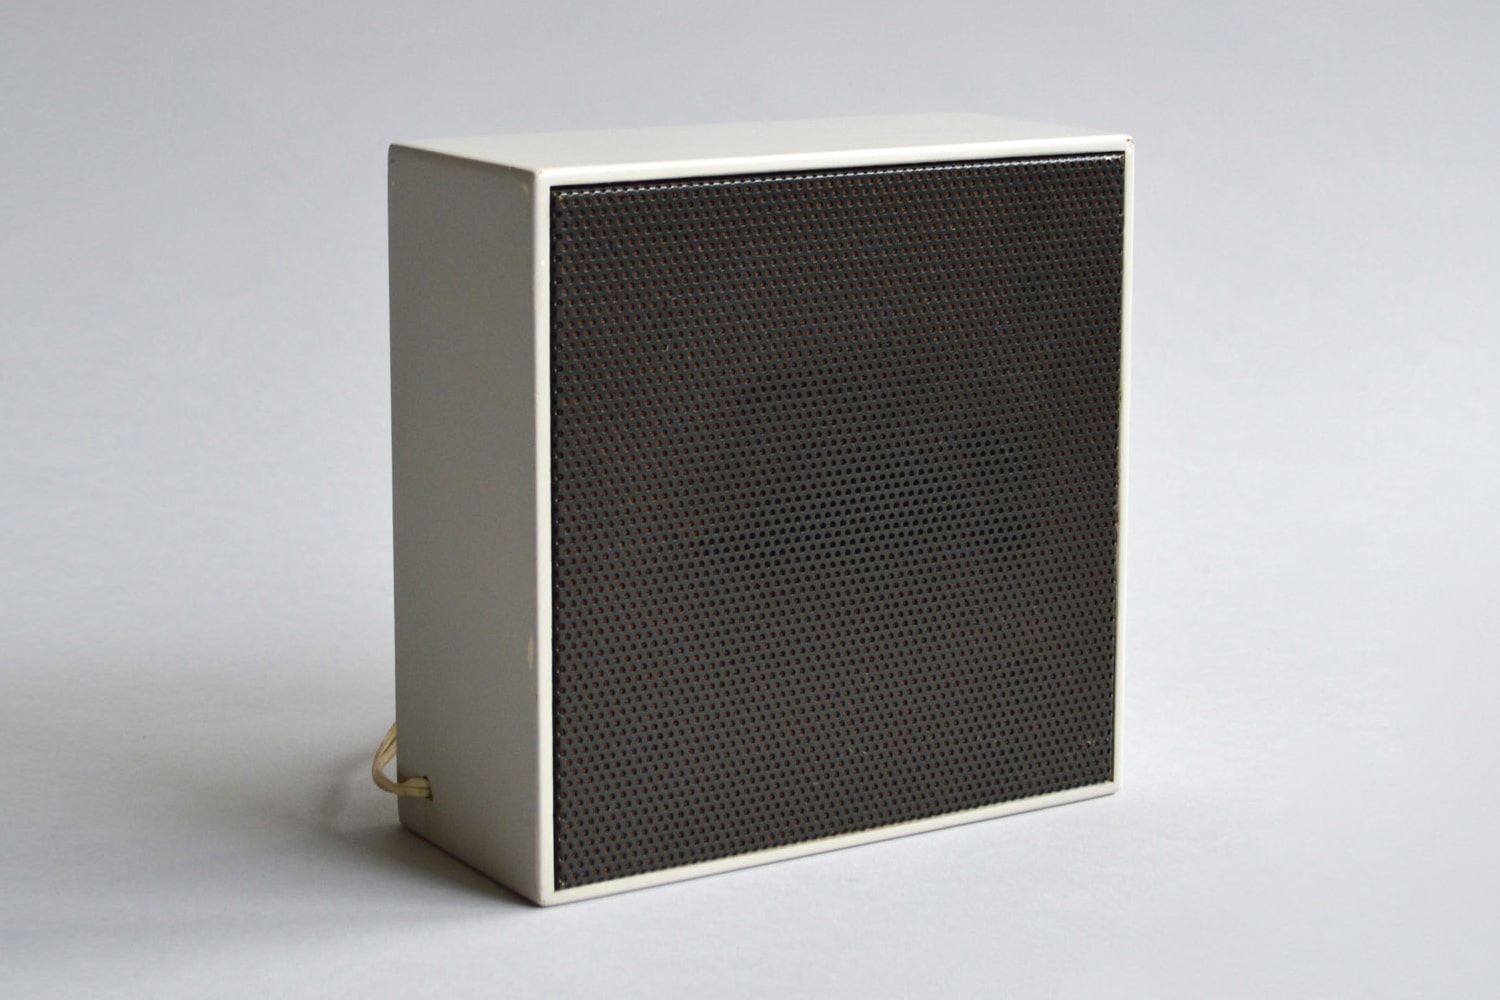 Braun Audio LE speakers